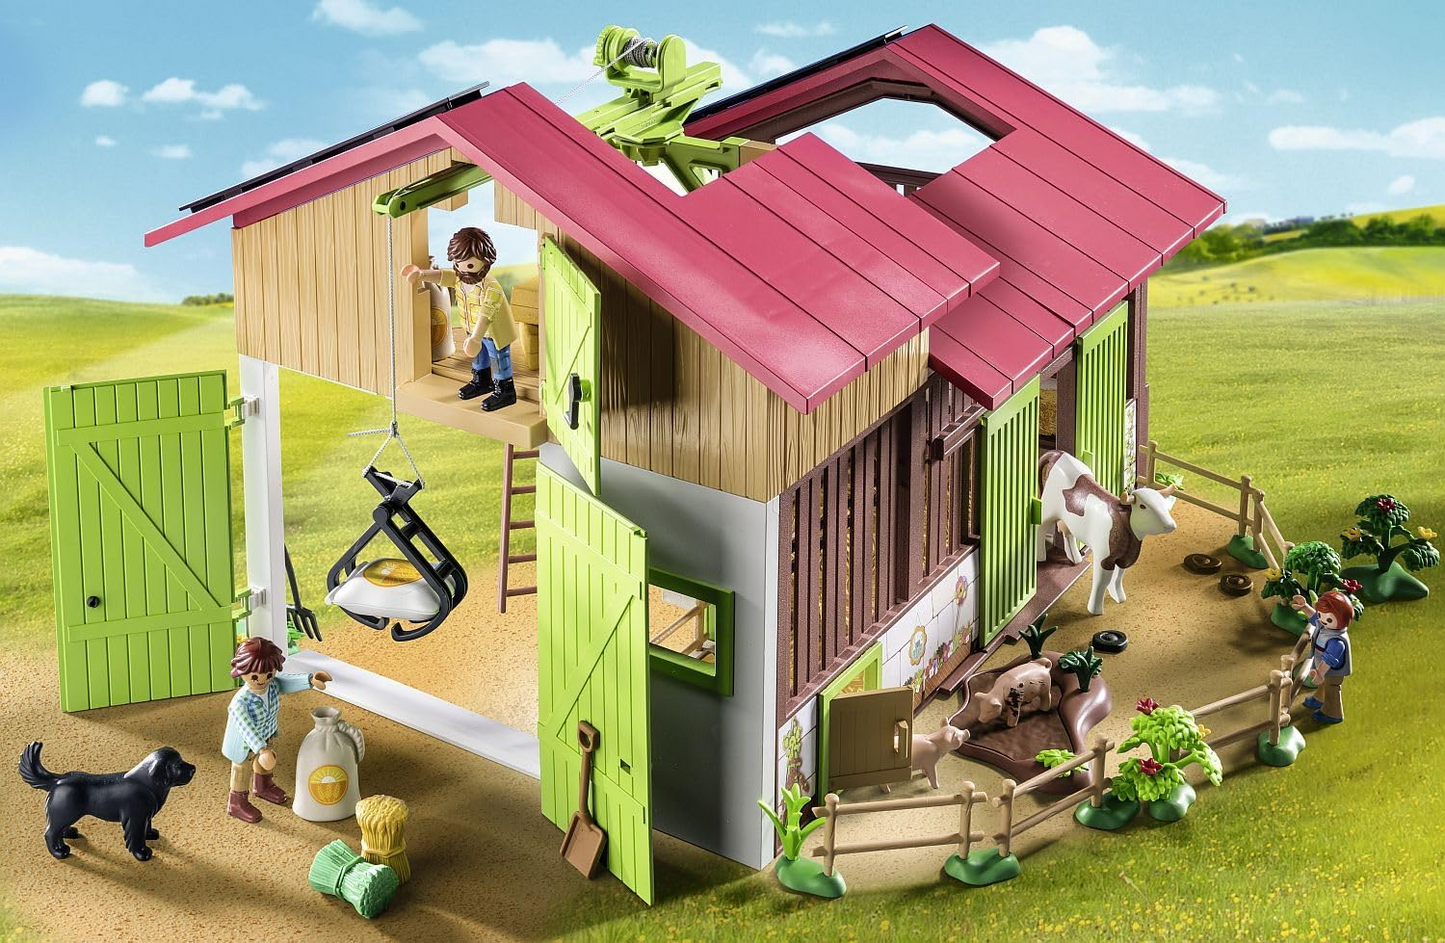 Playmobil 71304 Country Fazenda grande, feita de material sustentável com muitas funções e acessórios, dramatização divertida e imaginativa, conjuntos de jogos adequados para crianças a partir de 4 anos